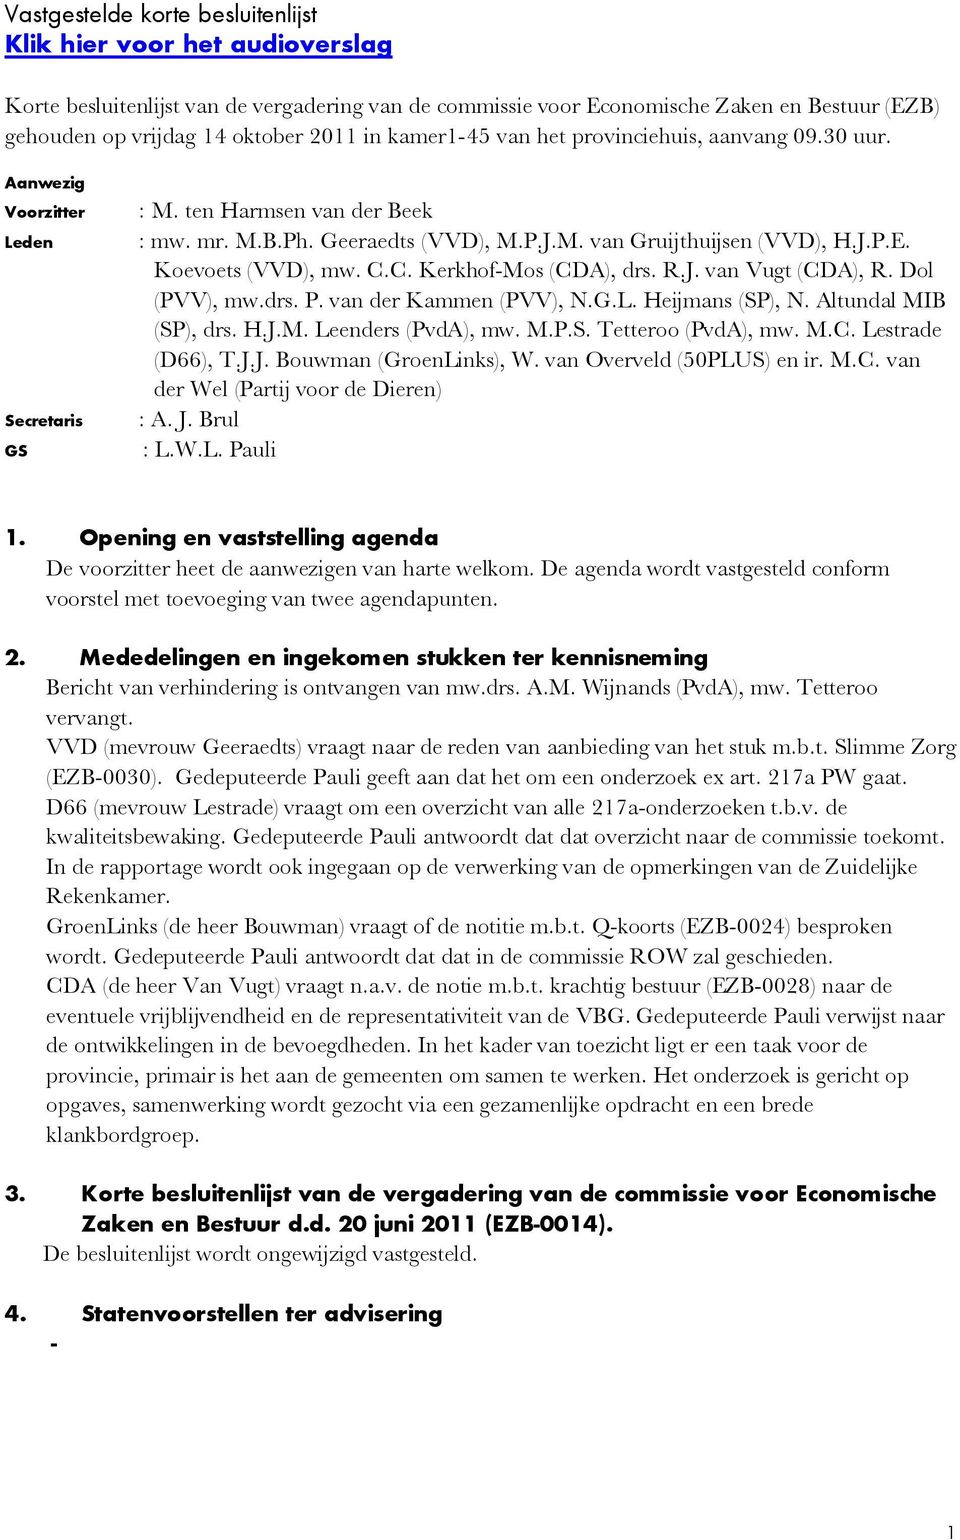 Koevoets (VVD), mw. C.C. Kerkhof-Mos (CDA), drs. R.J. van Vugt (CDA), R. Dol (PVV), mw.drs. P. van der Kammen (PVV), N.G.L. Heijmans (SP), N. Altundal MIB (SP), drs. H.J.M. Leenders (PvdA), mw. M.P.S. Tetteroo (PvdA), mw.